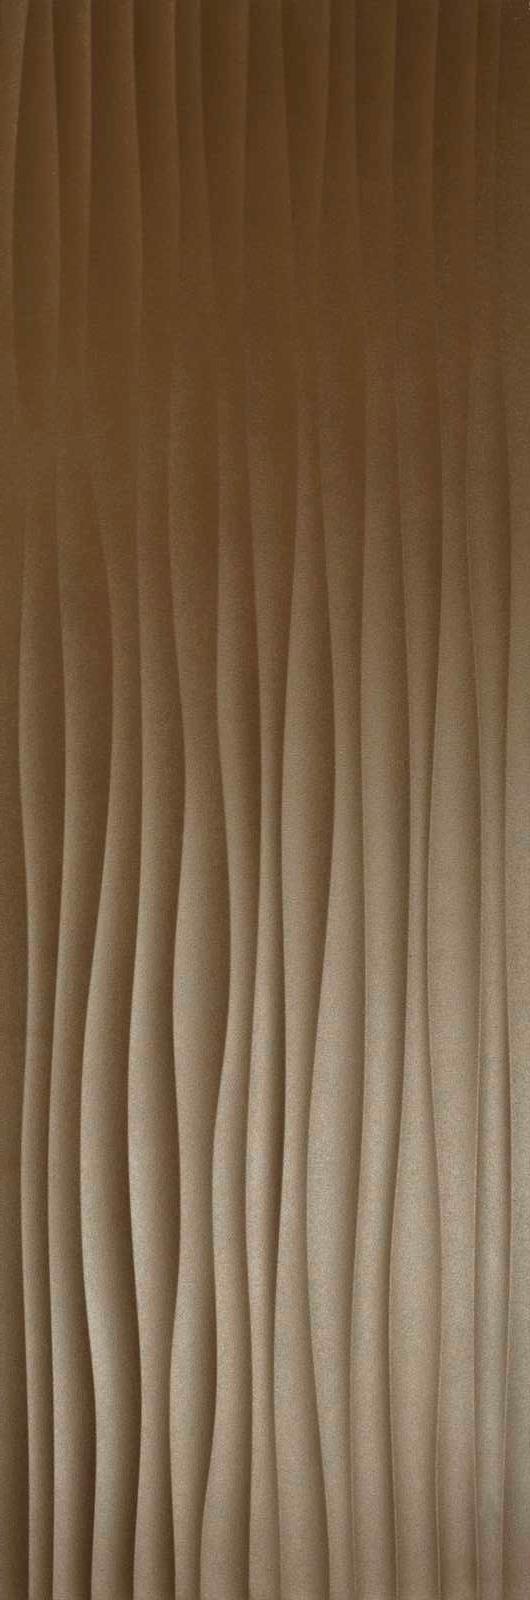 Фото - Керамическая плитка для стен Marazzi Eclettica 40x120 коричневый (M1AM) керамическая плитка для стен marazzi eclettica 40x120 красный m19k